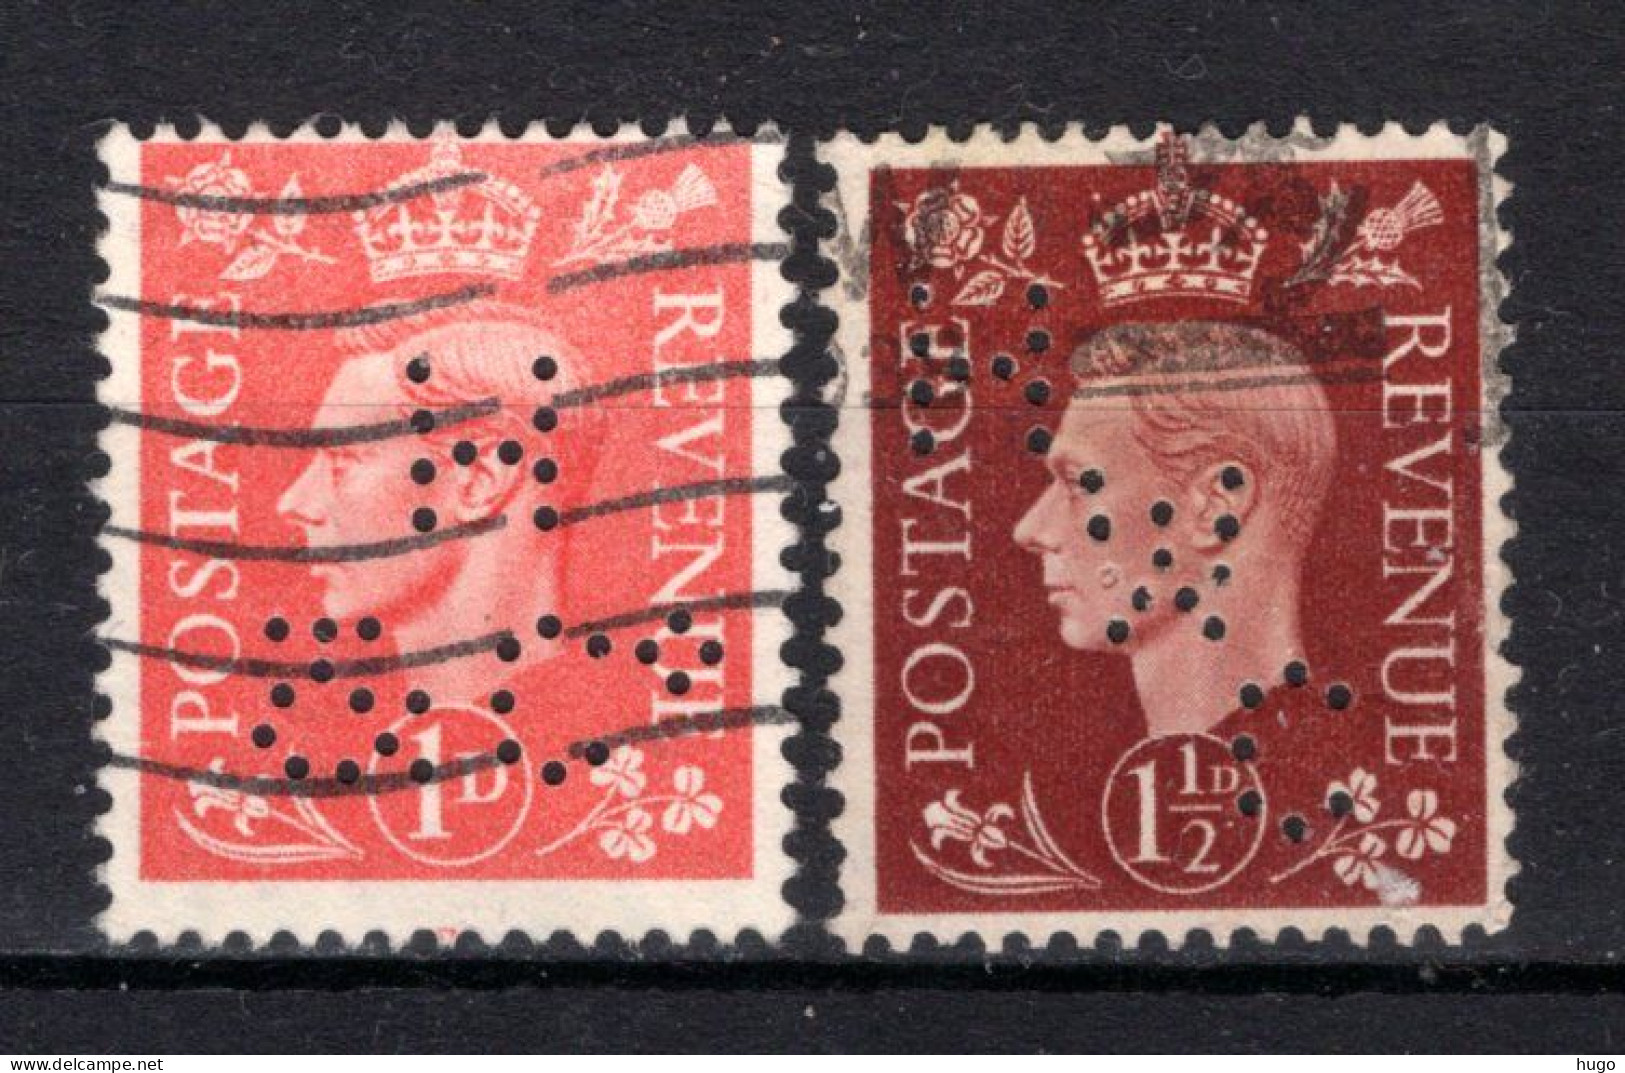 GROOT BRITTANIE Yt. 210/211° Gestempeld 1937 - Used Stamps